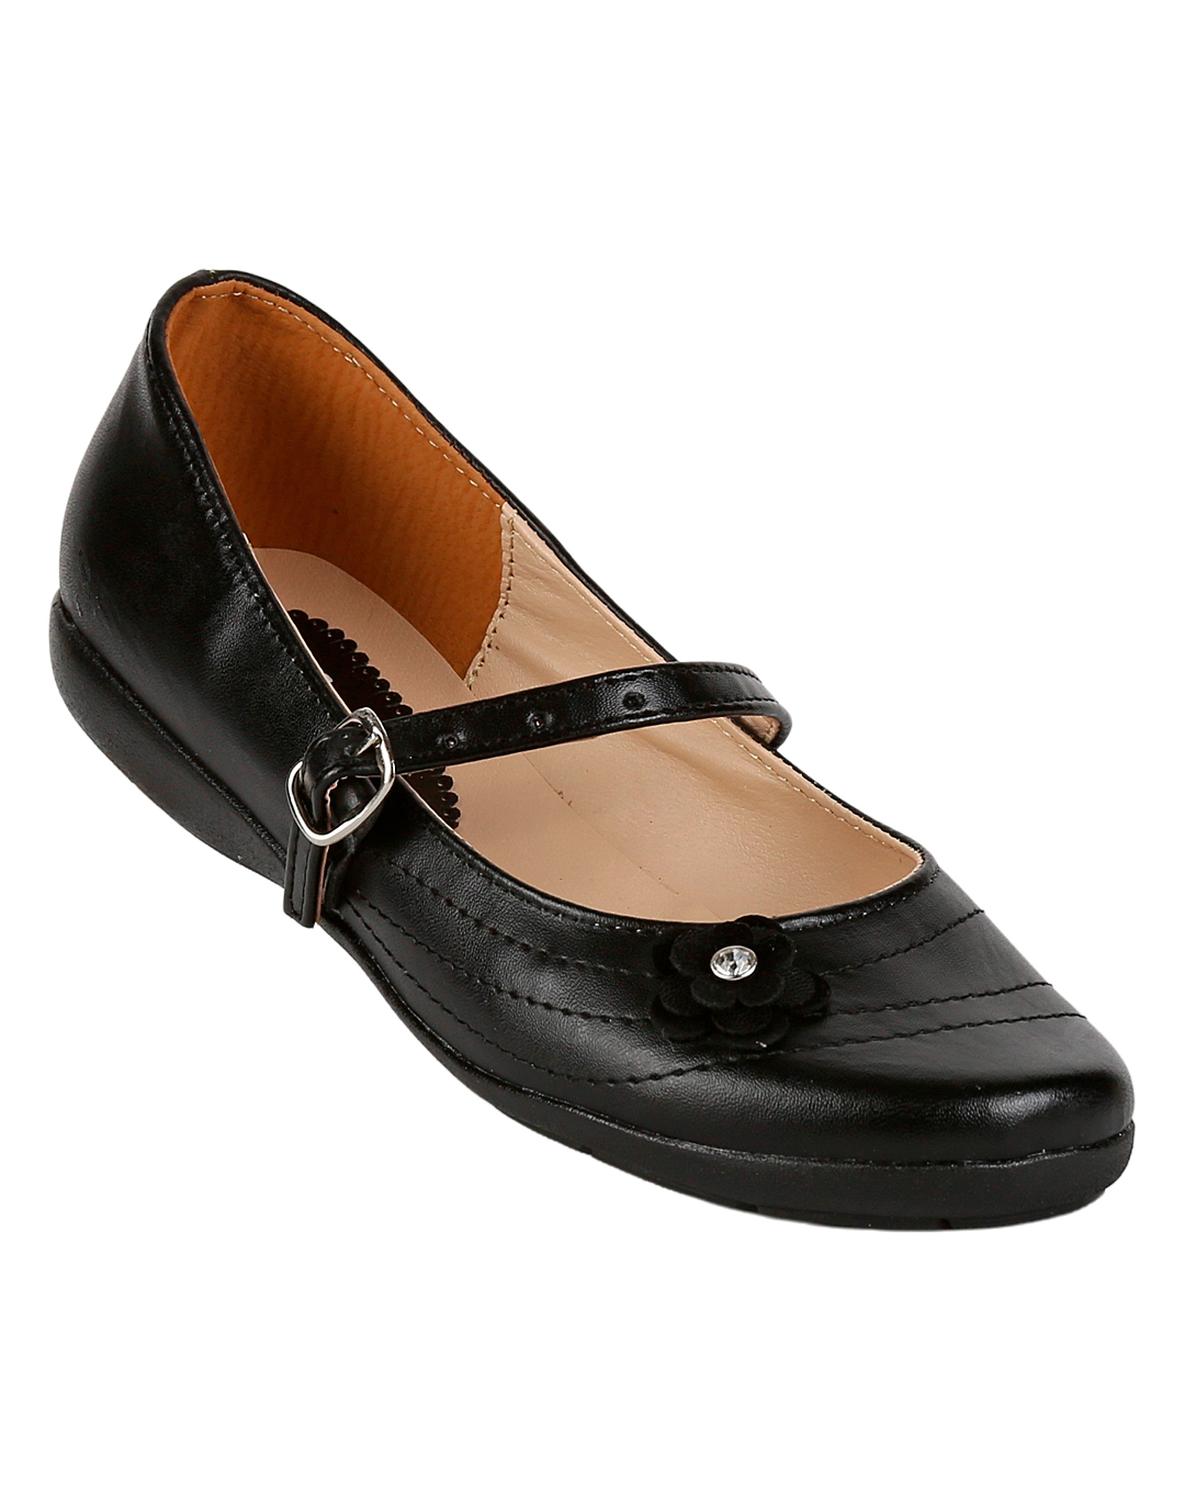 Zapato Escolar Piso Niña Negro Tacto Piel Frata 18303805